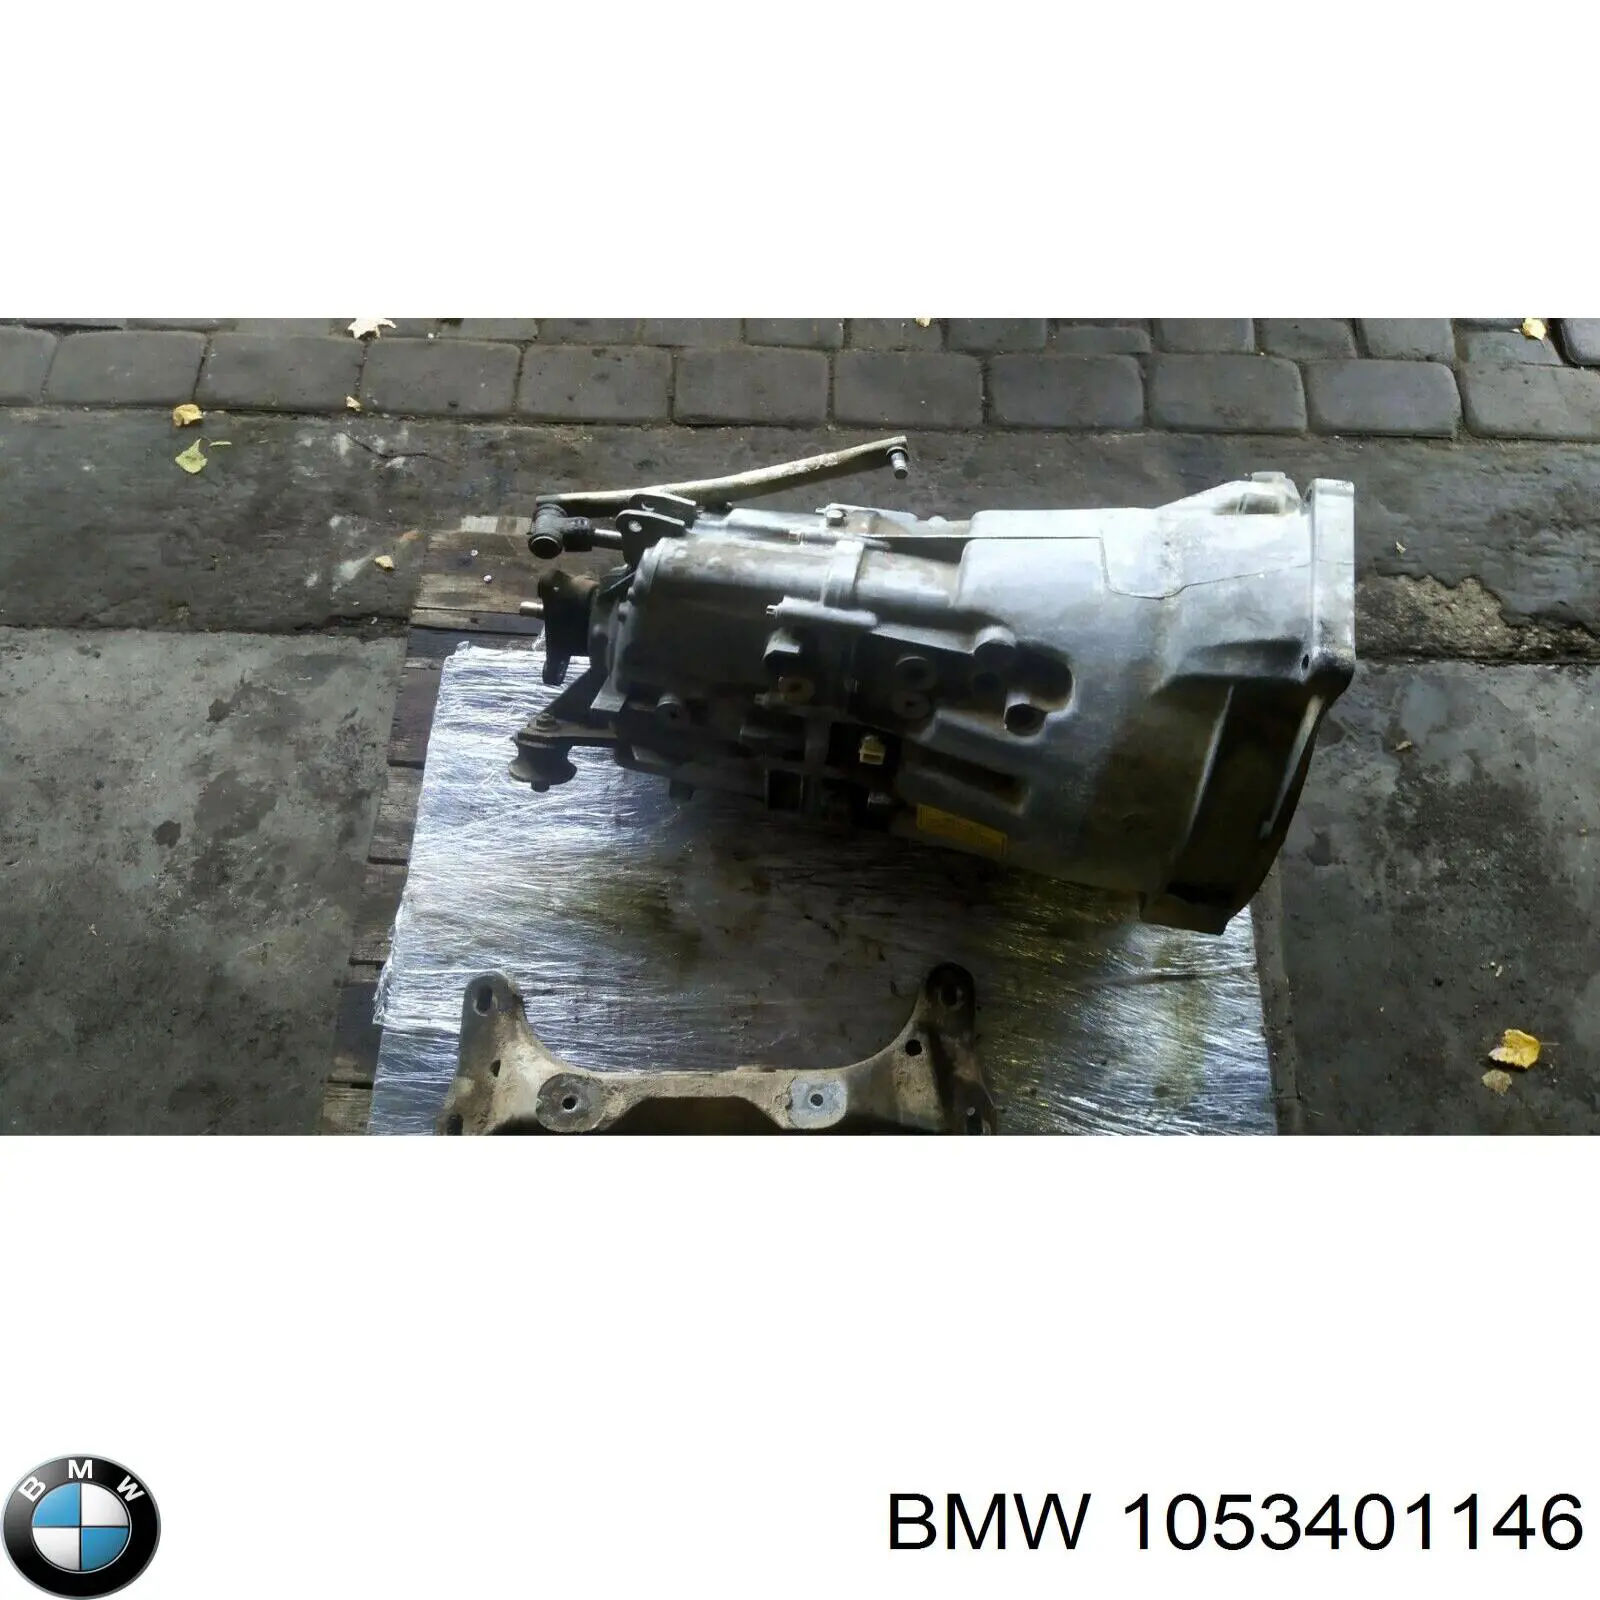 HDZ BMW caixa de mudança montada (caixa mecânica de velocidades)